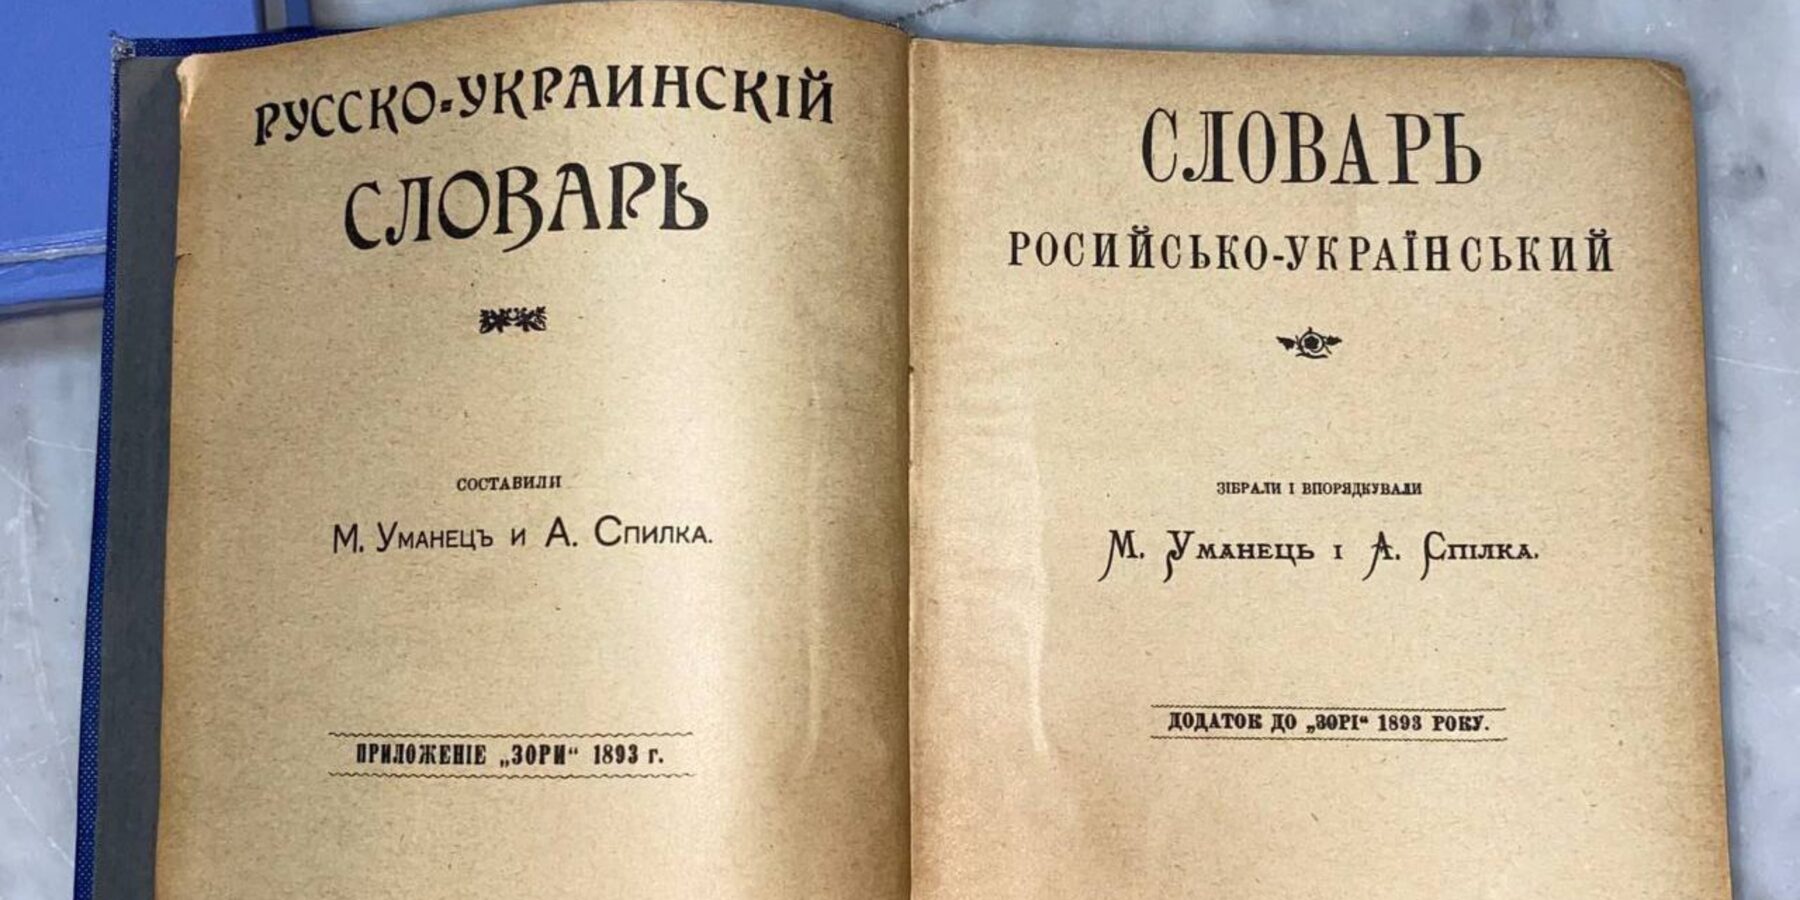 Національному музею історії України передали раритетний російсько-український словник